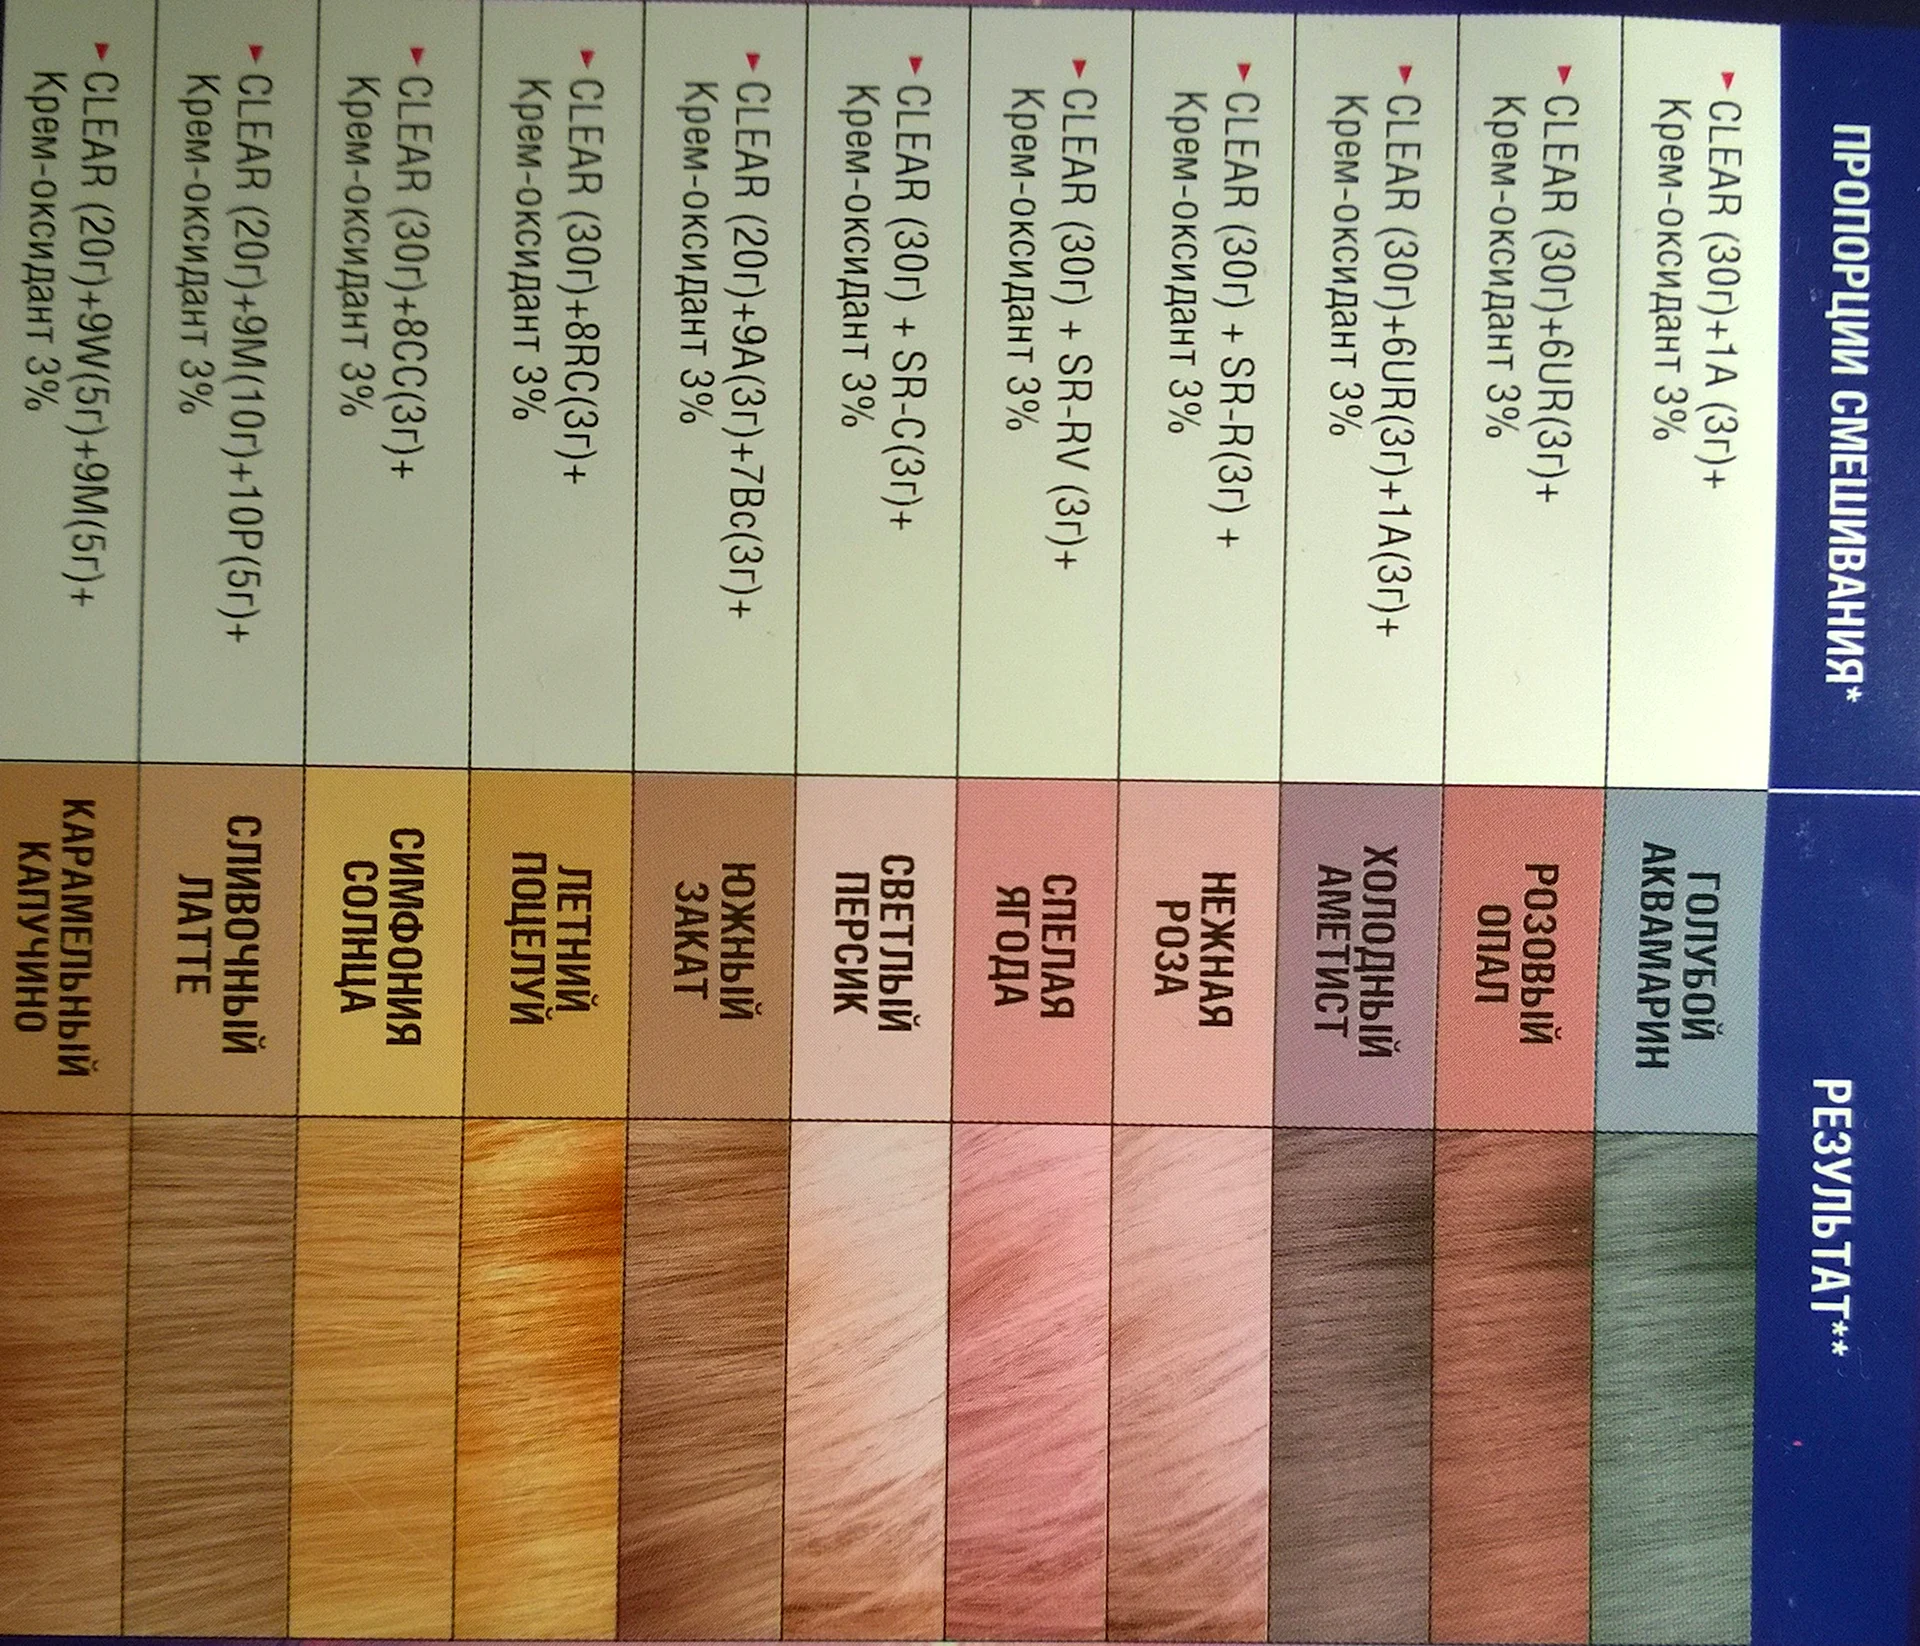 Таблица цветов краски для волос